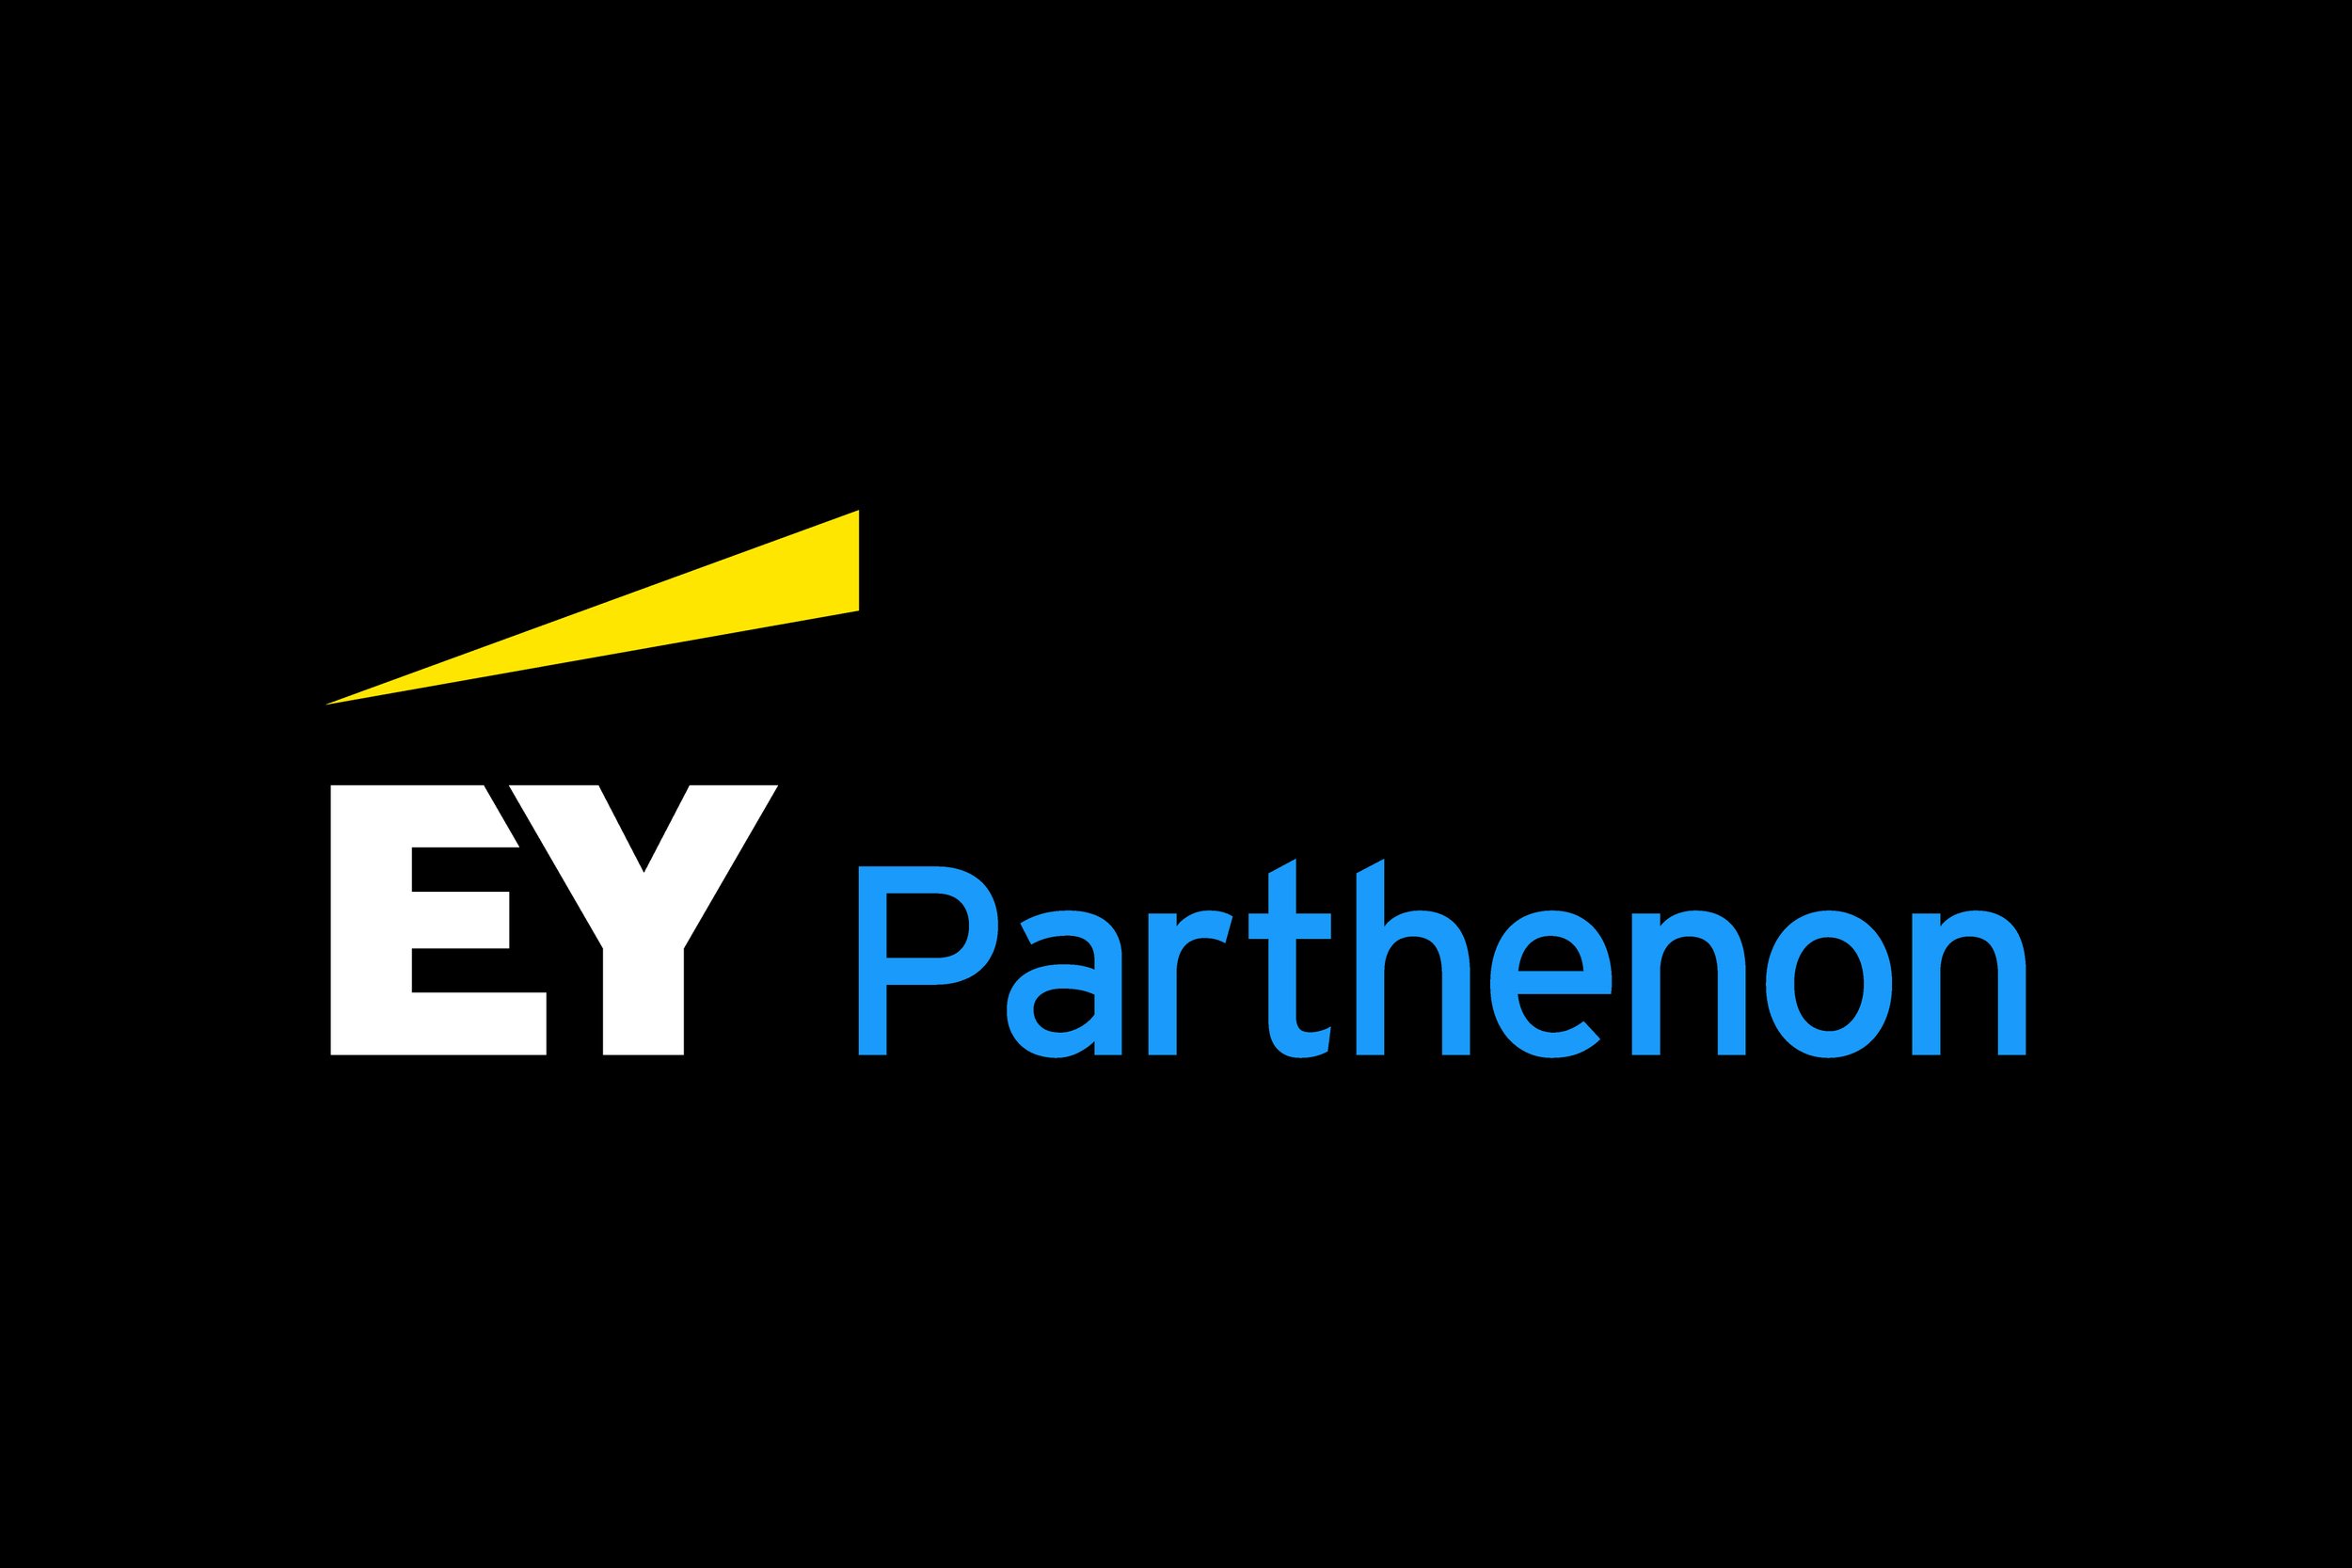 ey-parthenon-logo-darkblue.jpg